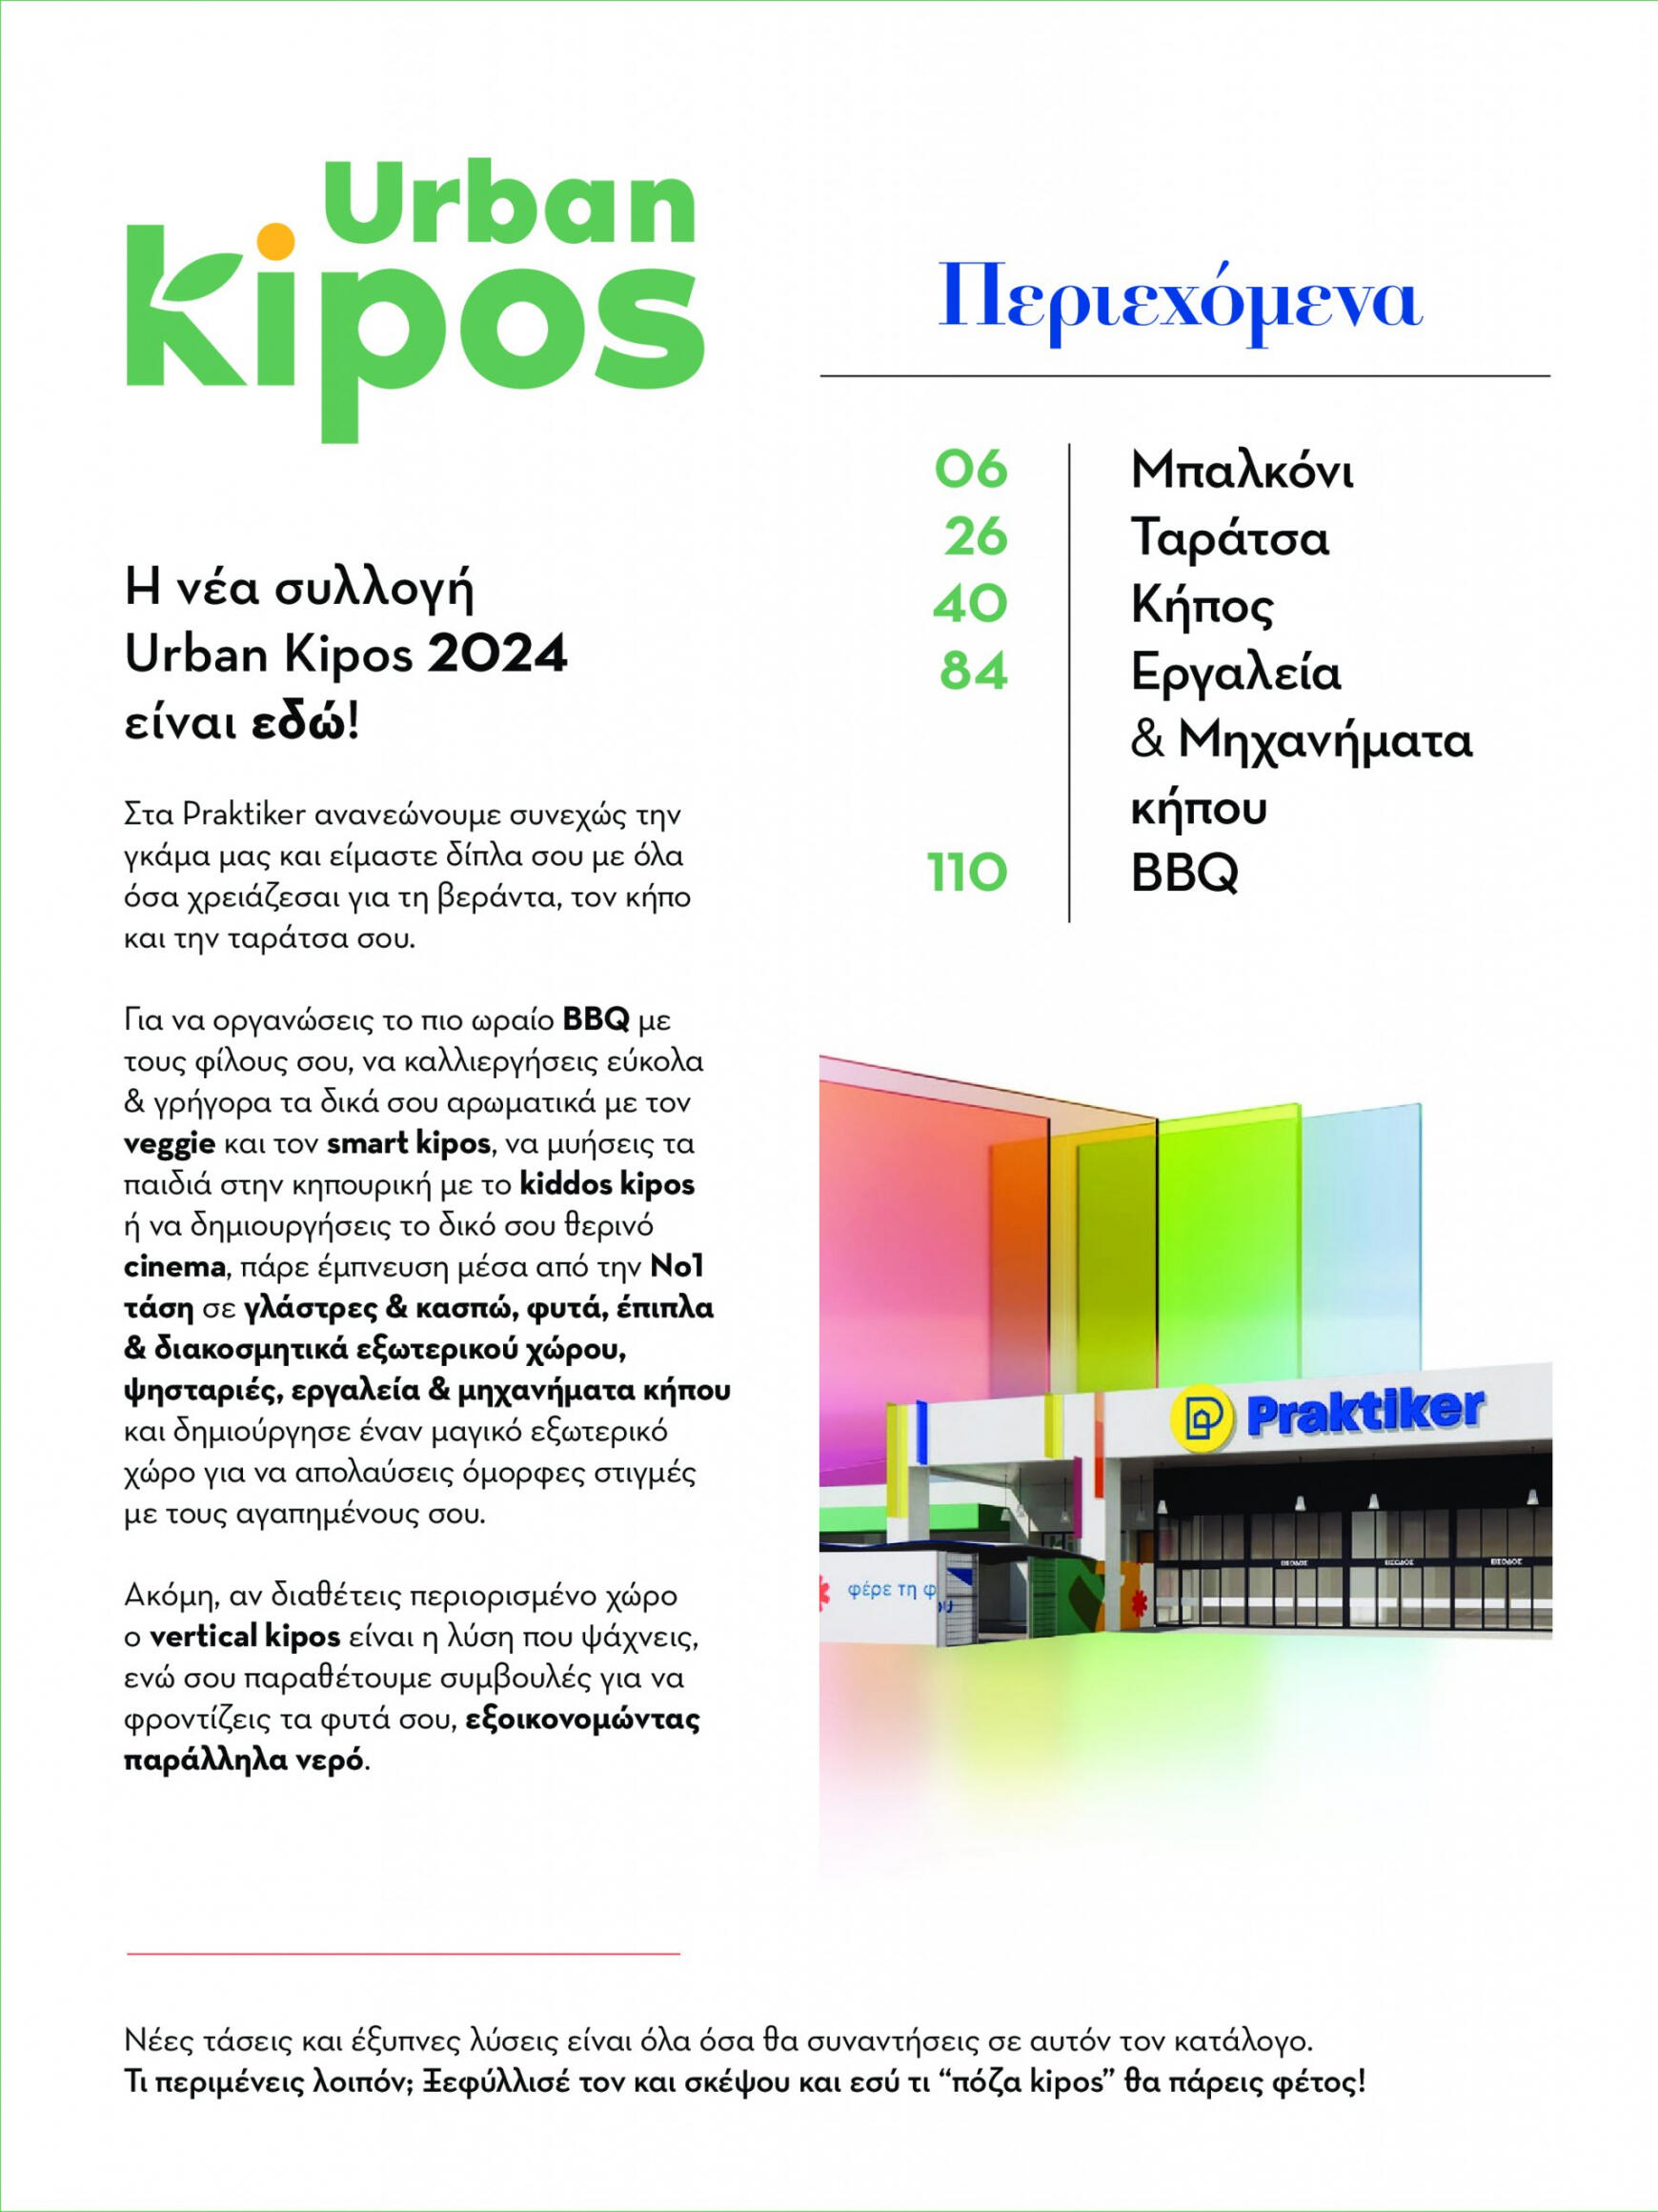 praktiker - Praktiker - Κατάλογος URBAN KIPOS φυλλάδιο ρεύματος 22/04 - 30/06 - page: 2